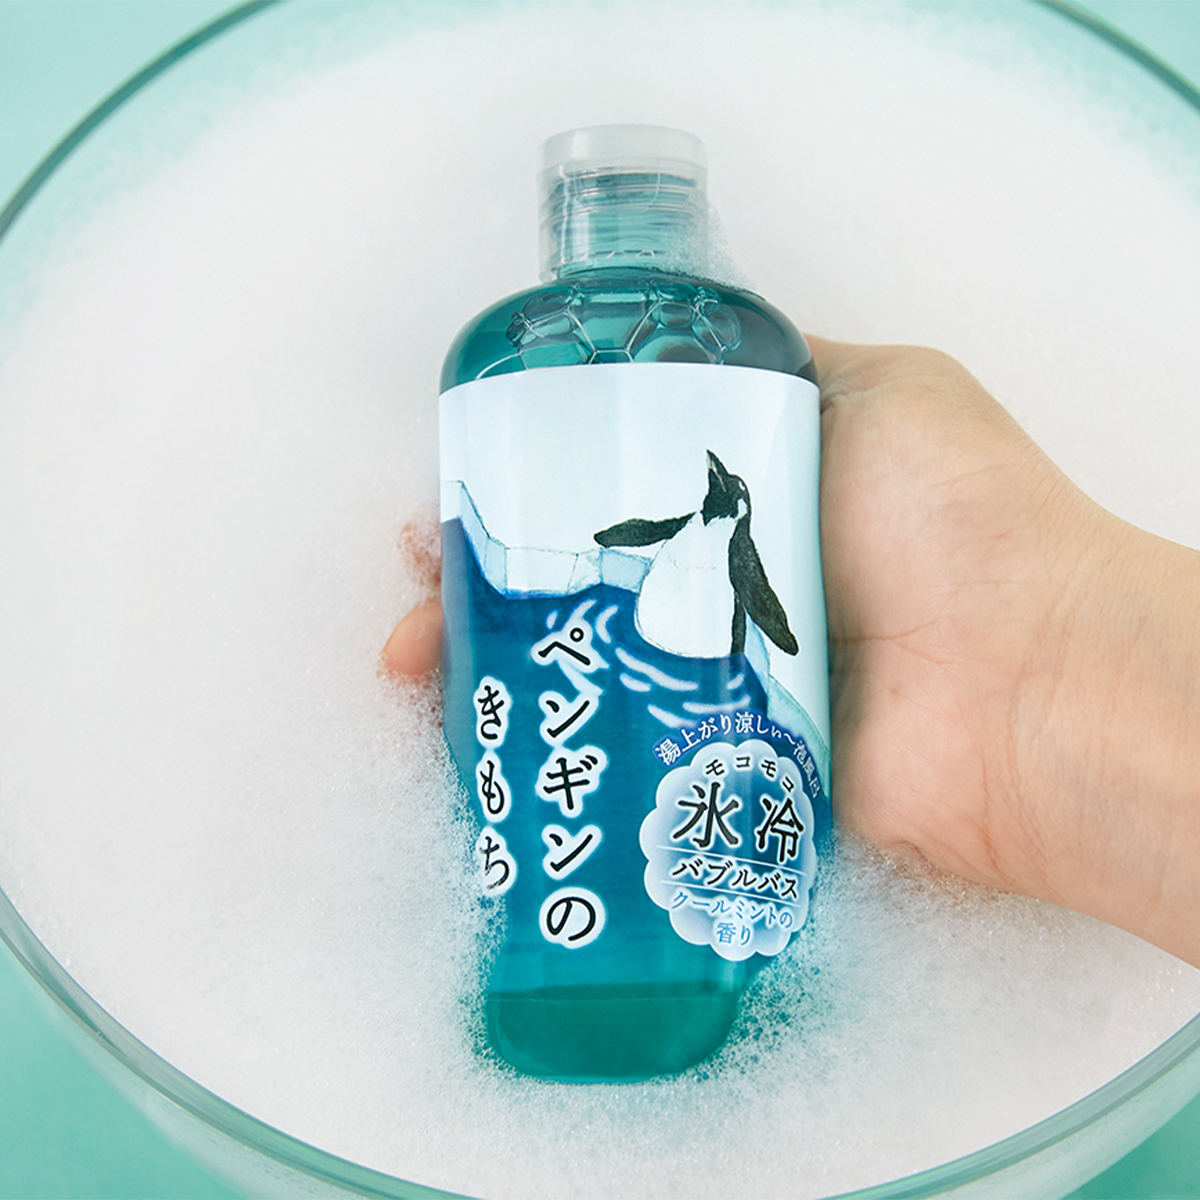 【Kimochi】キモチ 氷冷バブルバス ペンギン シロクマ